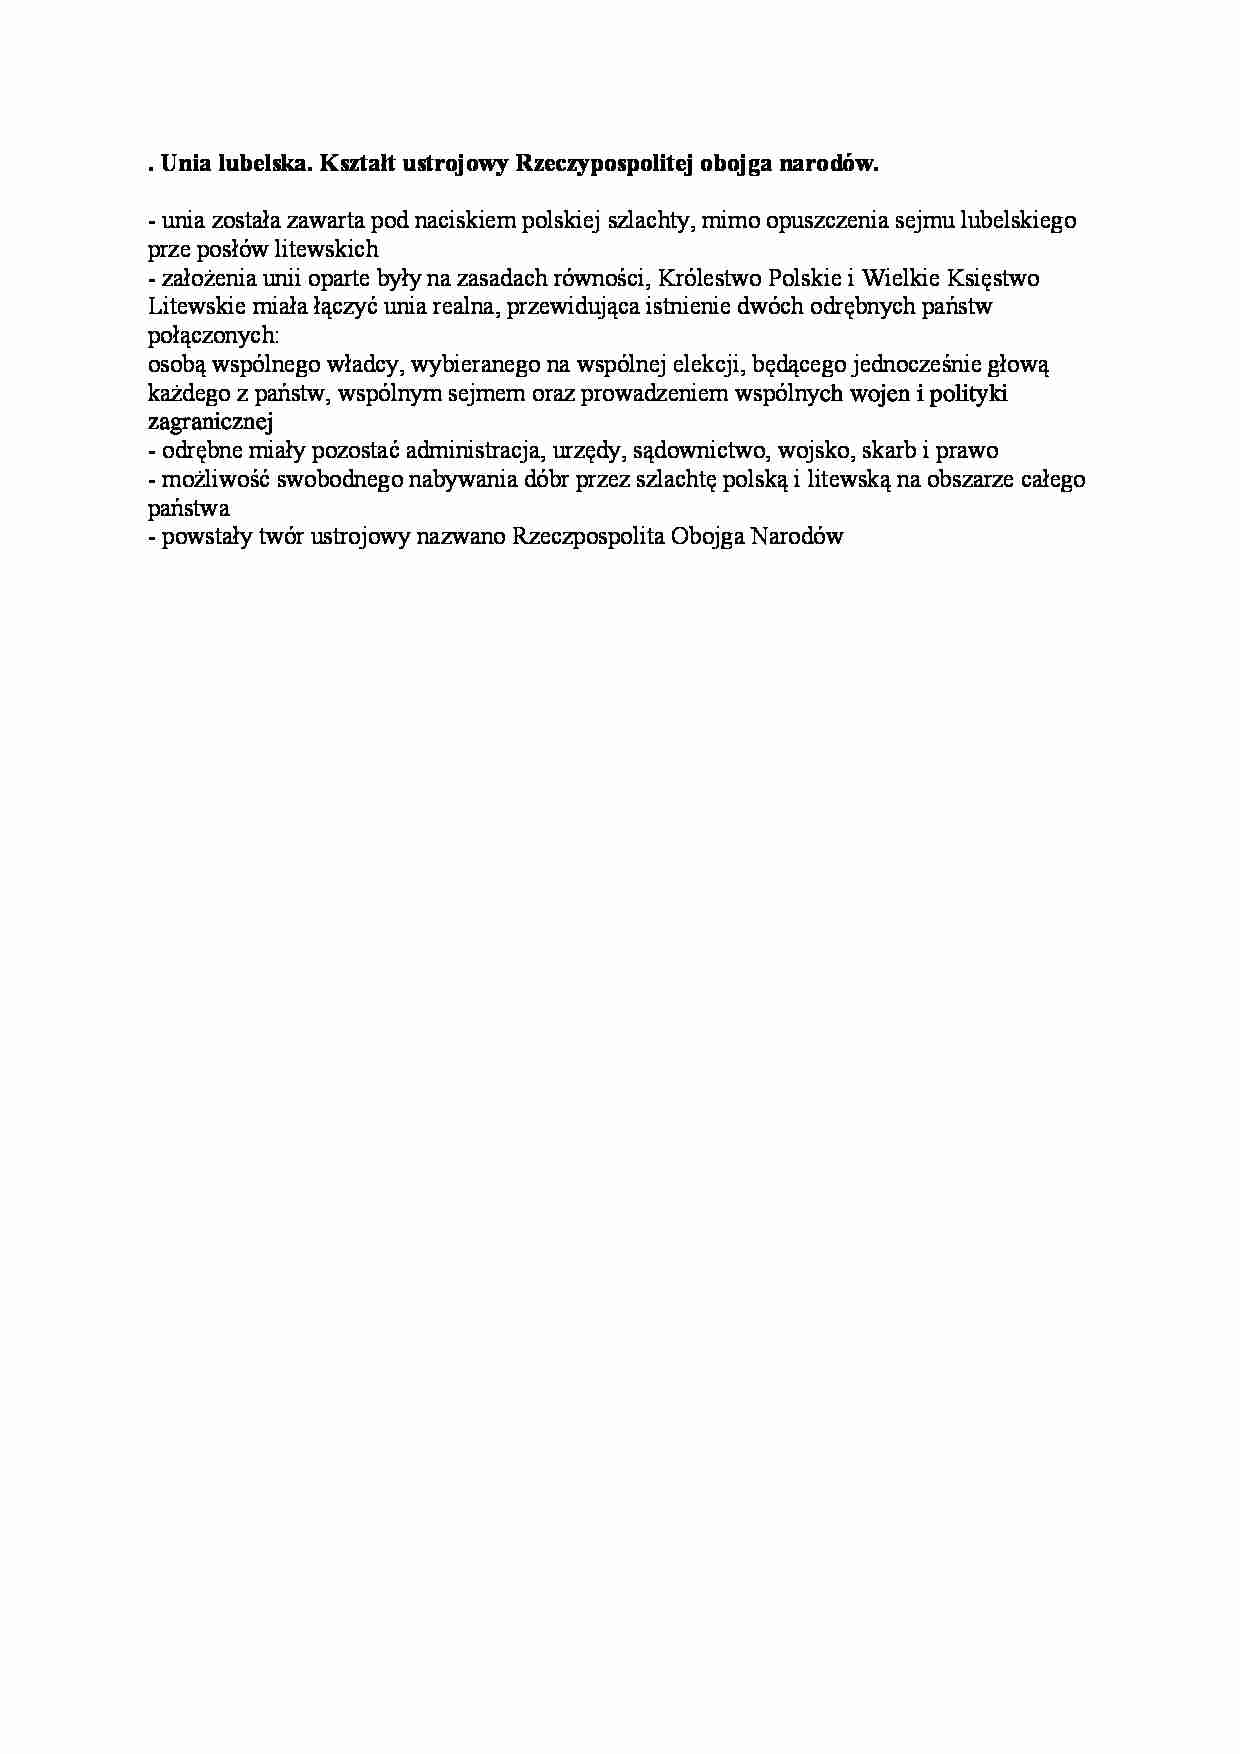 Unia lubelska - wstęp - strona 1